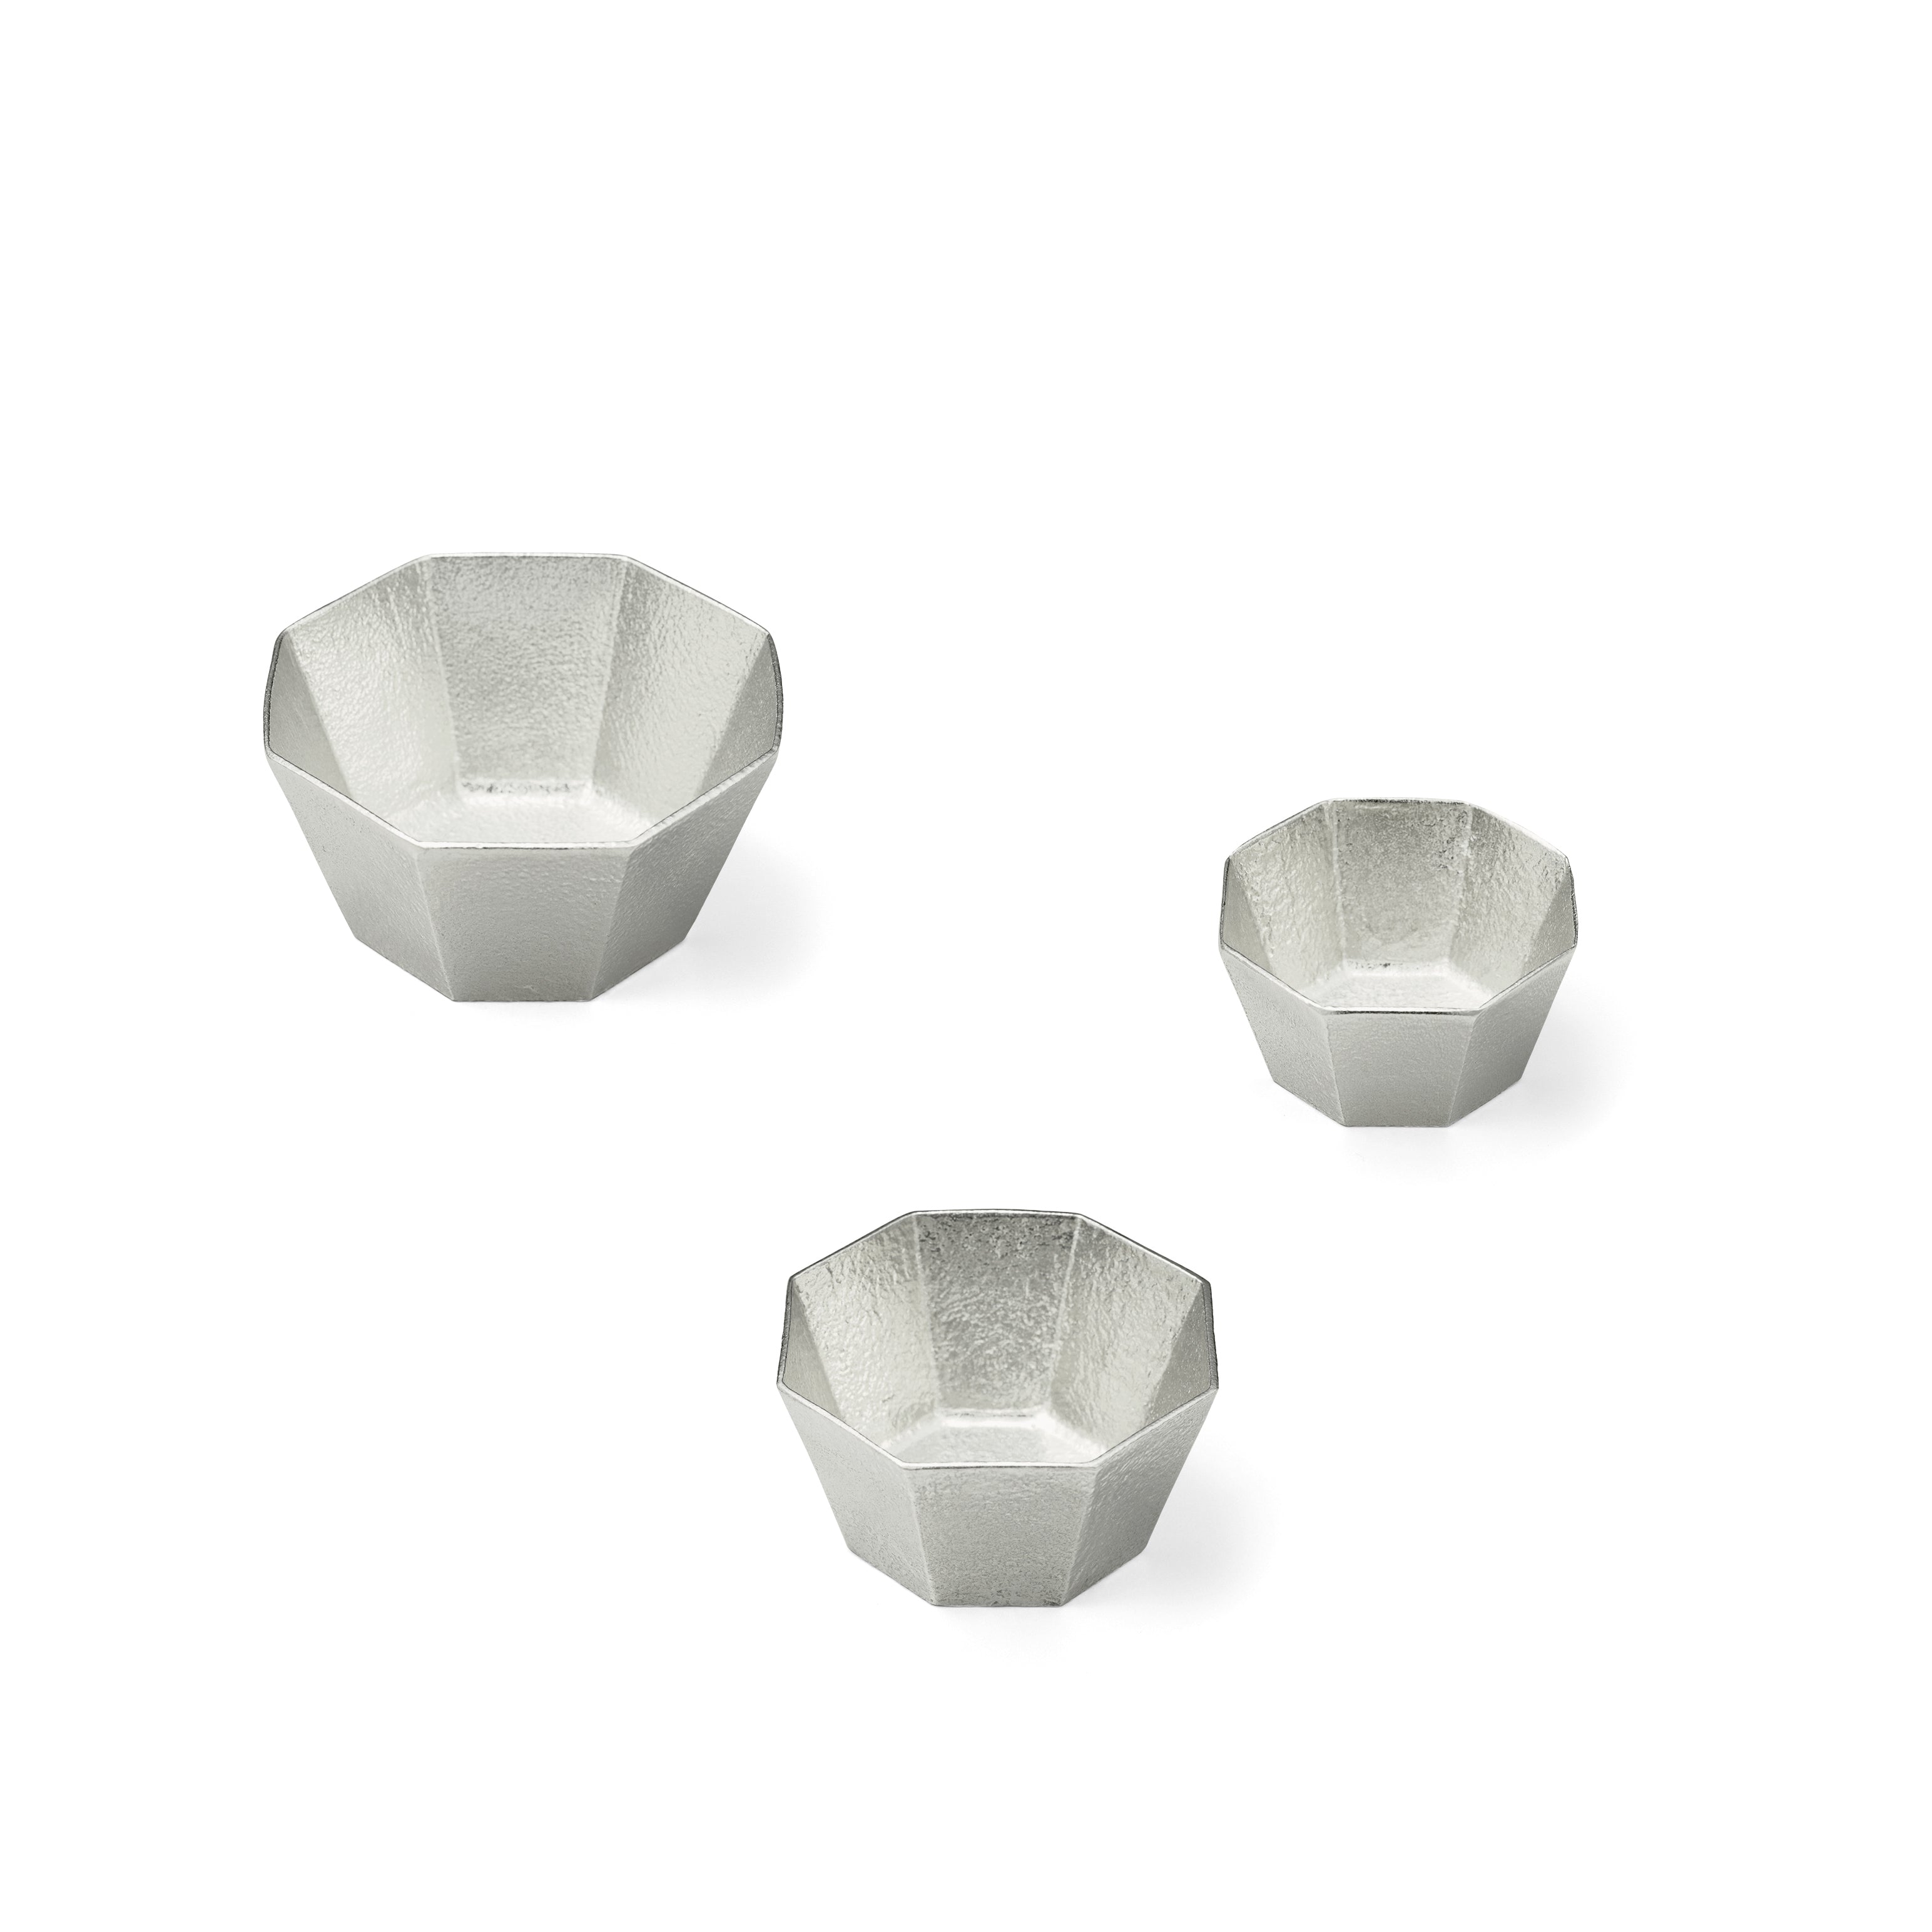 Japanese Kuzushi - Ori Tin Bowl in Medium